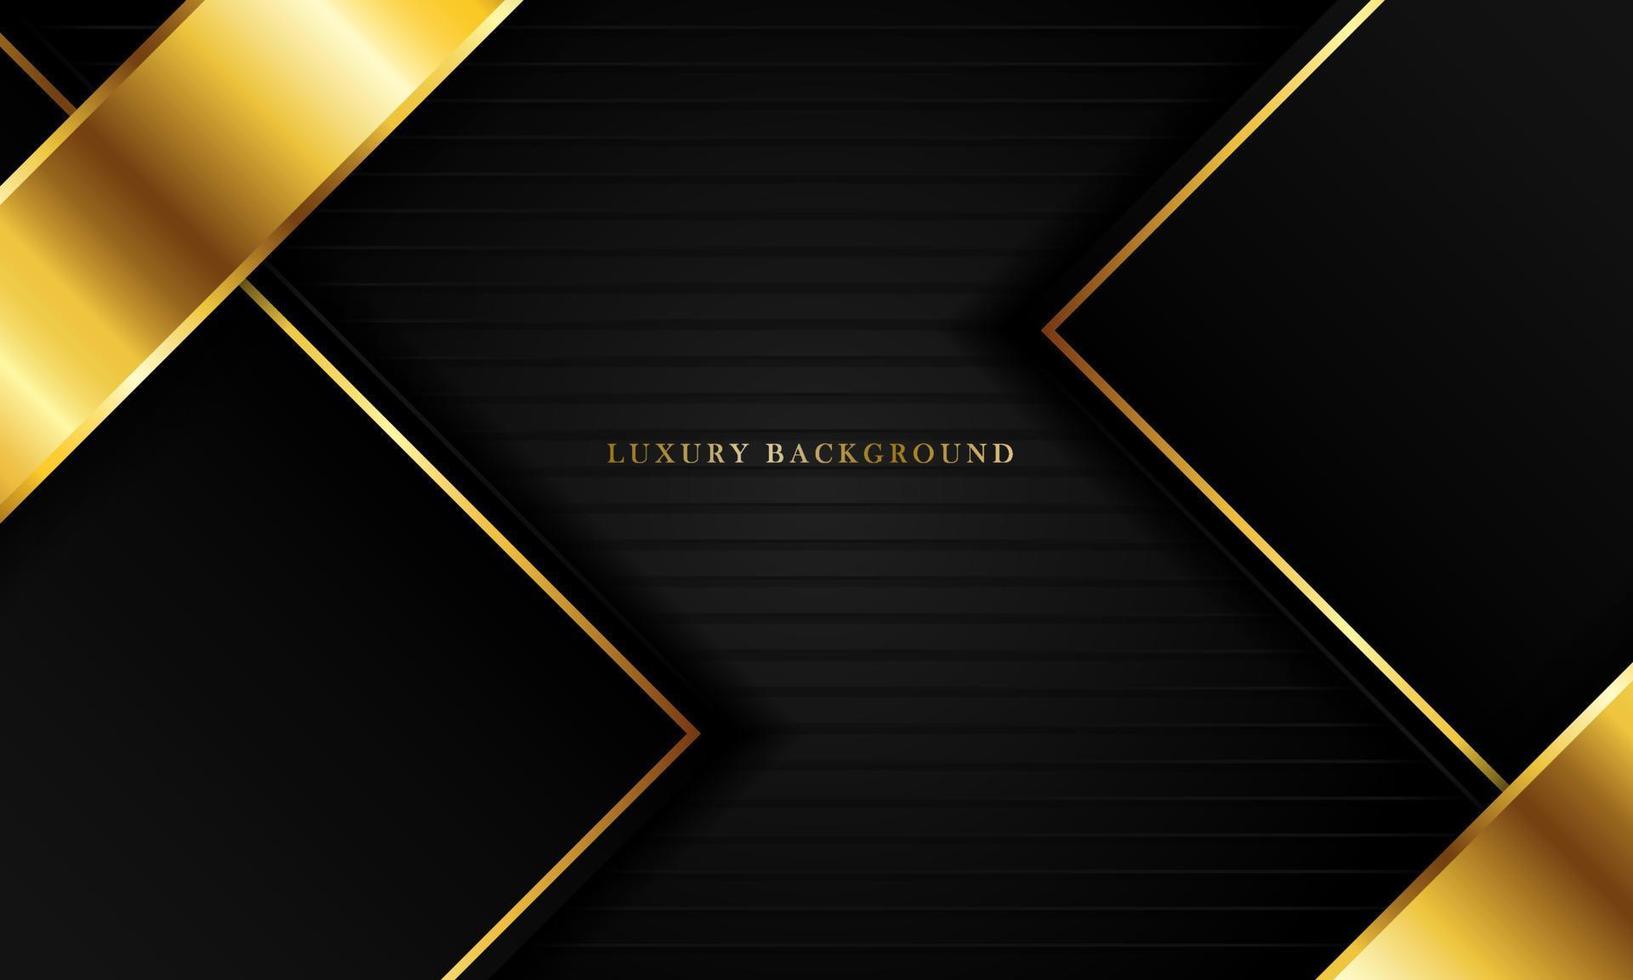 luxuriöser schwarzer hintergrund mit einer goldenen farbkombination, perfekt für vorlagen, broschüren, visitenkarten, banner oder tapeten. elegantes Design. vektor